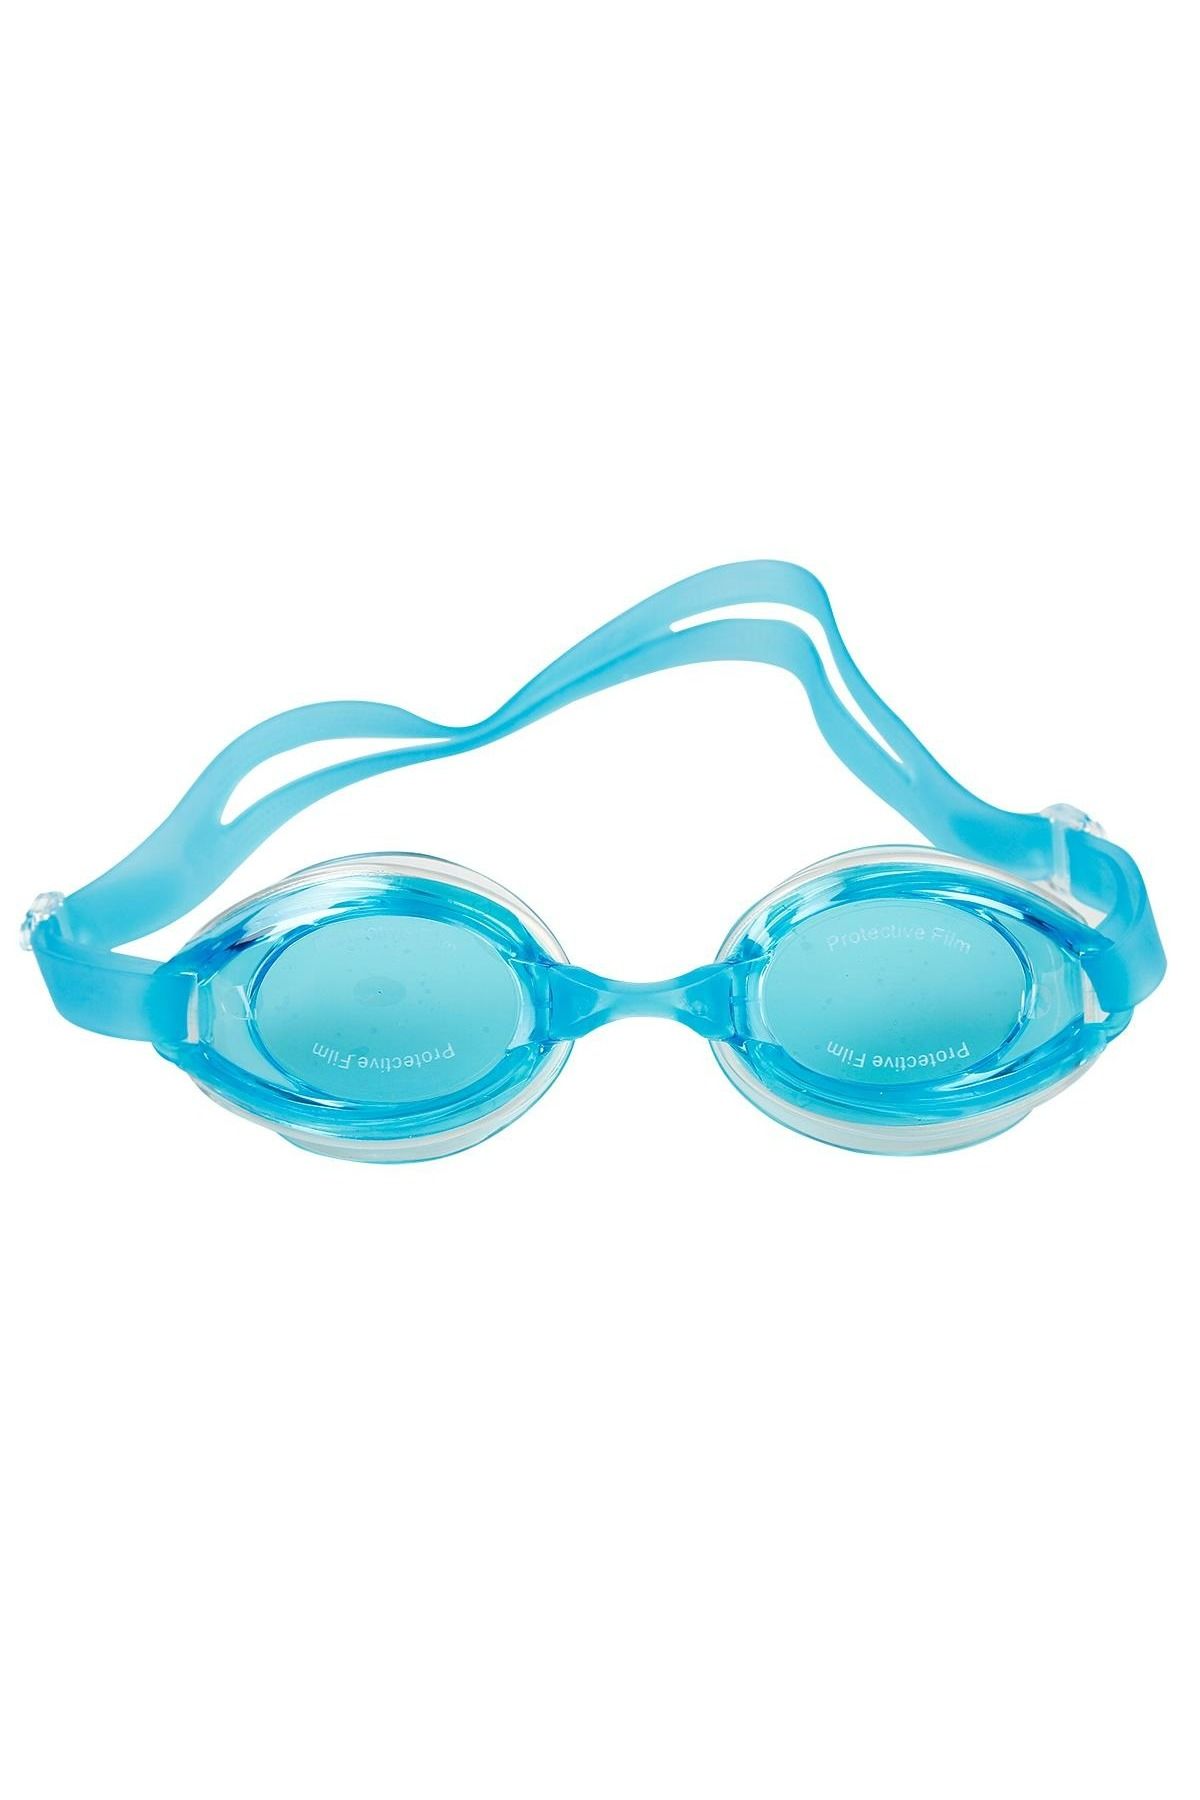 Efna Store Can Oyuncak Yüzücü Gözlüğü Mint Yeşili +3 yaş şeffaf Saklama kutulu